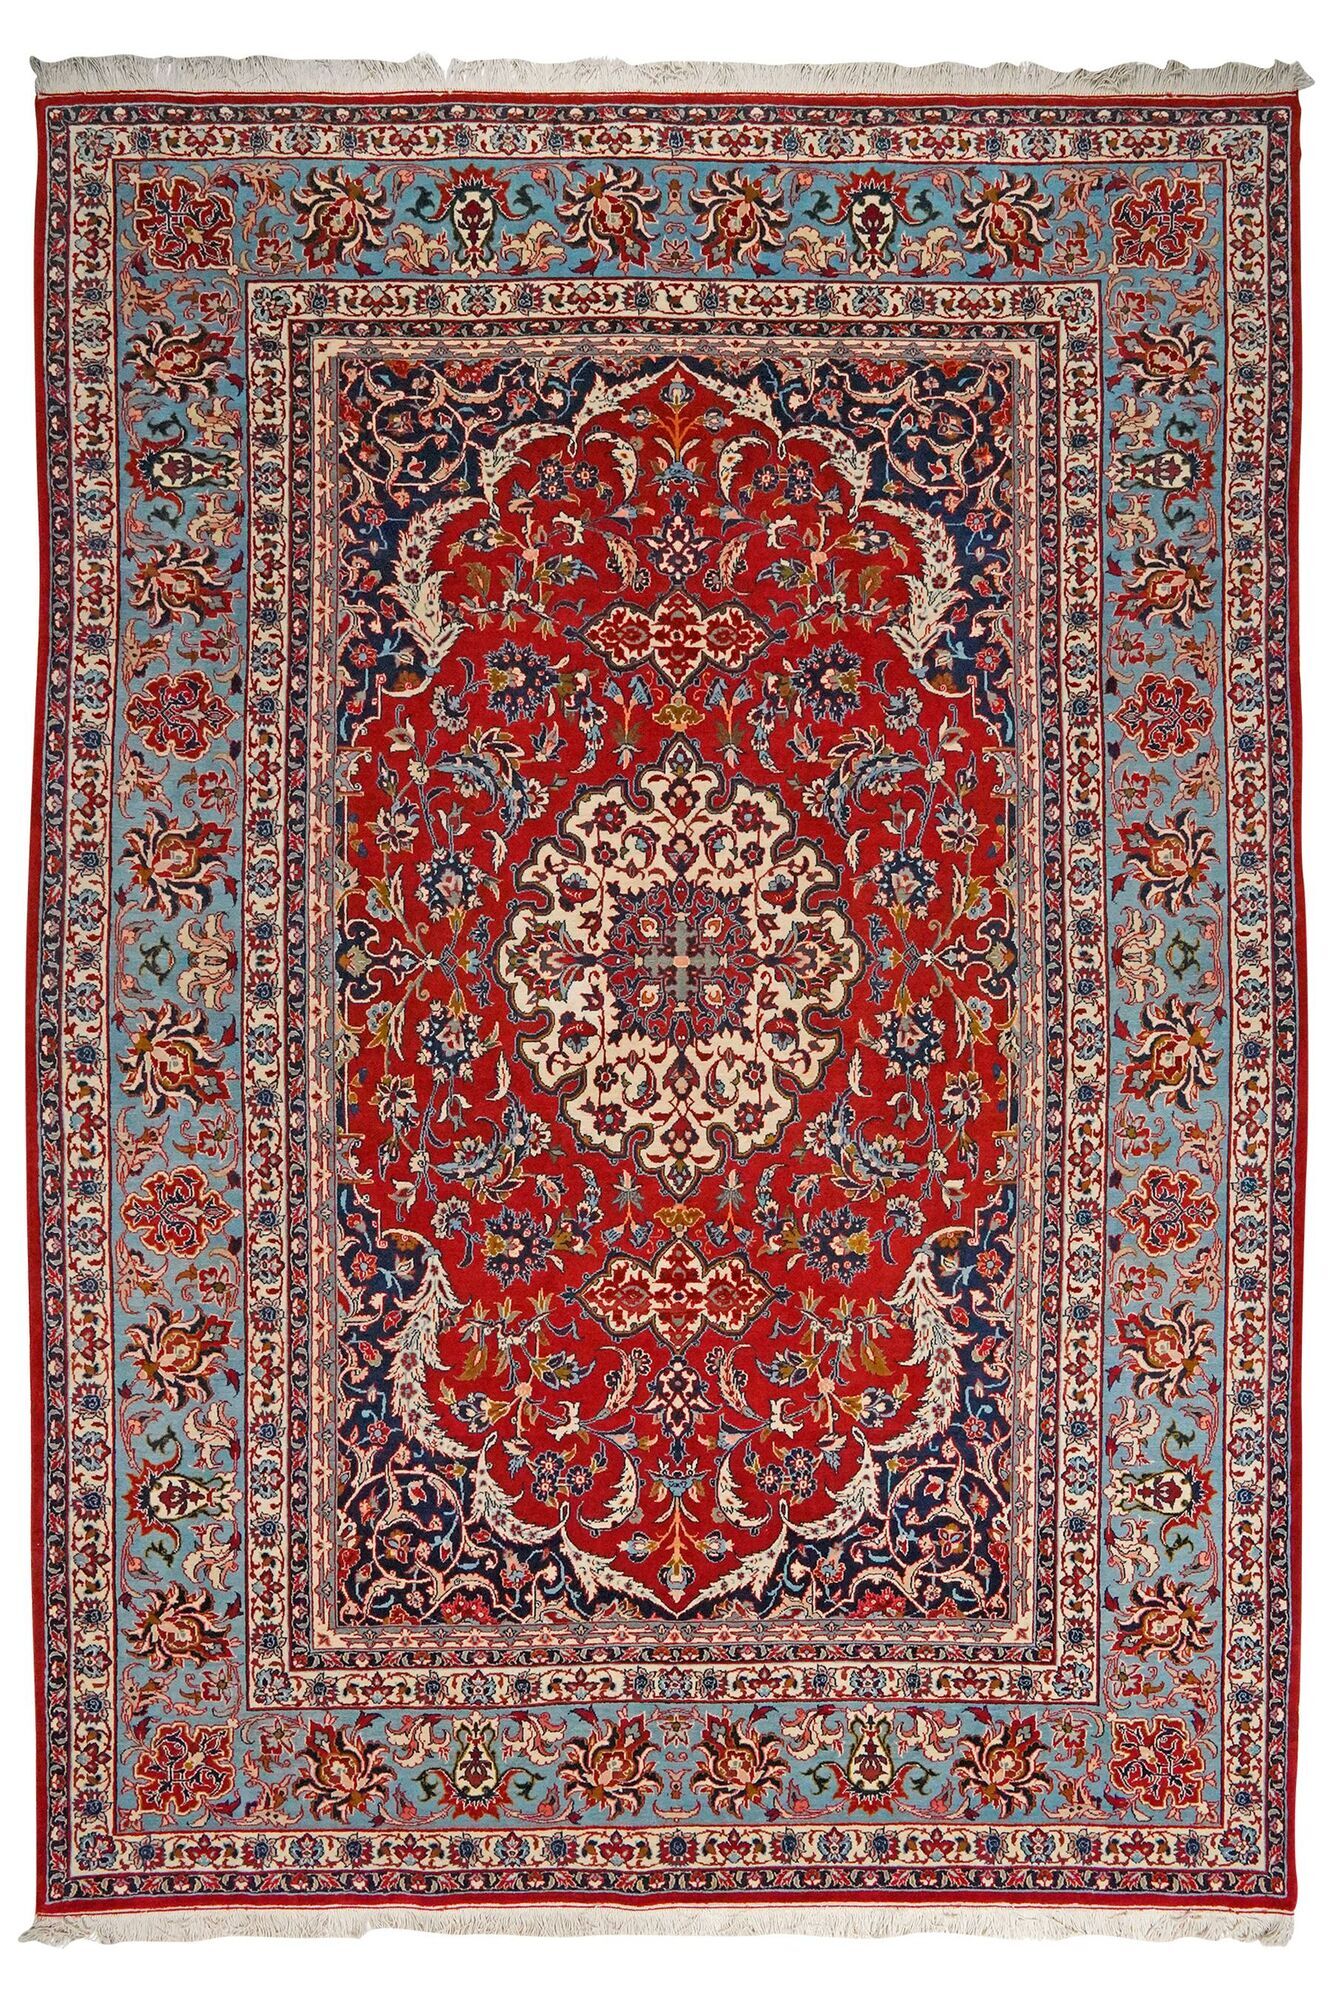 Annodato a mano. Provenienza: Persia / Iran Isfahan di seta ordito Tappeto 210x300